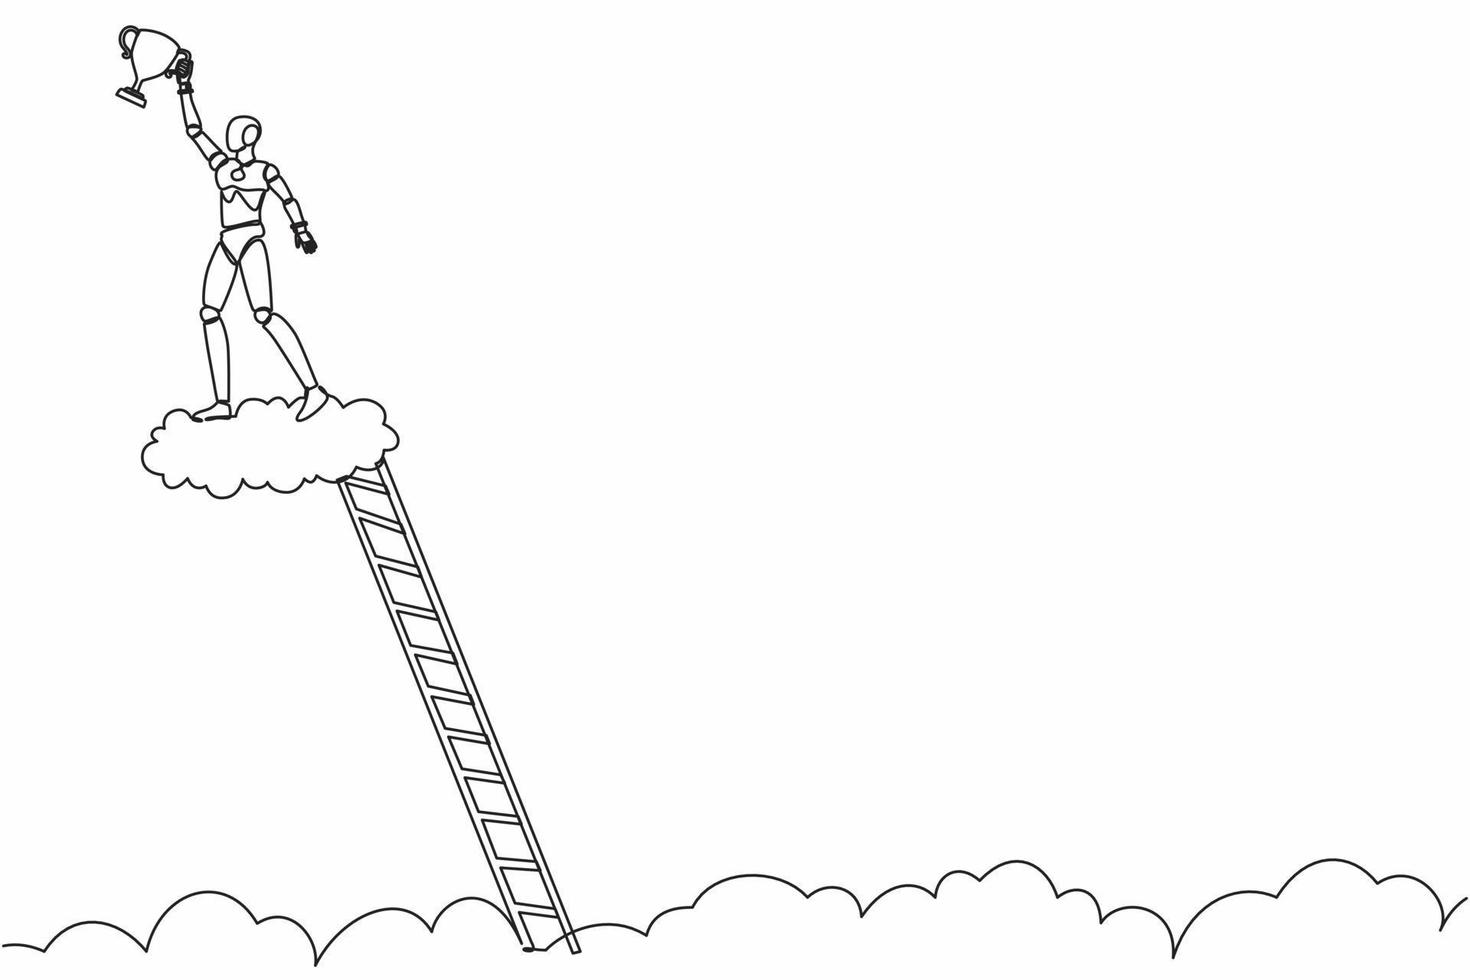 kontinuierliche einzeilige zeichnung roboter kletterleiter und hält trophäe in der wolke. Das Zeigen des Preises feiert seinen Sieg im Himmel. humanoider Roboter kybernetischer Organismus. einzeiliges zeichnen design vektorillustration vektor